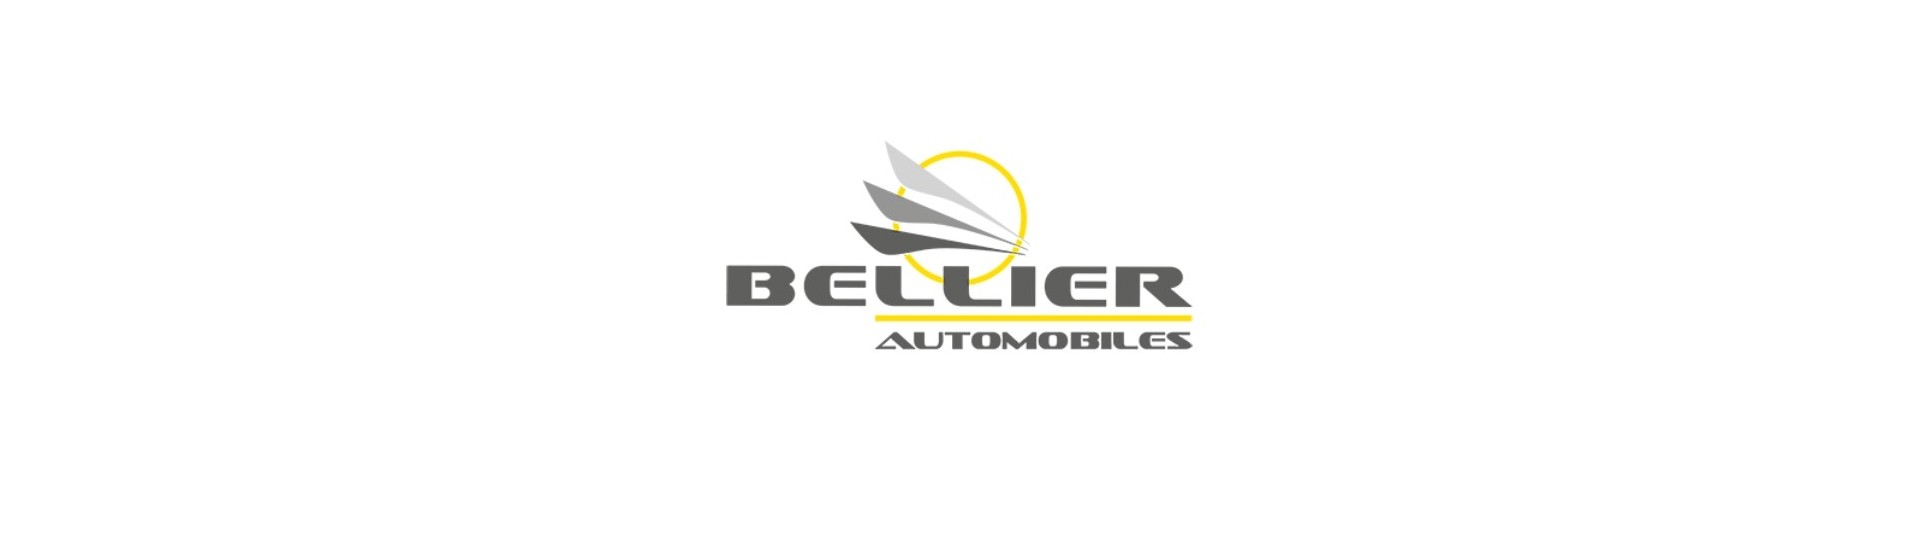 Varapyöräkori parhaaseen hintaan autolle ilman ajokorttia Bellier